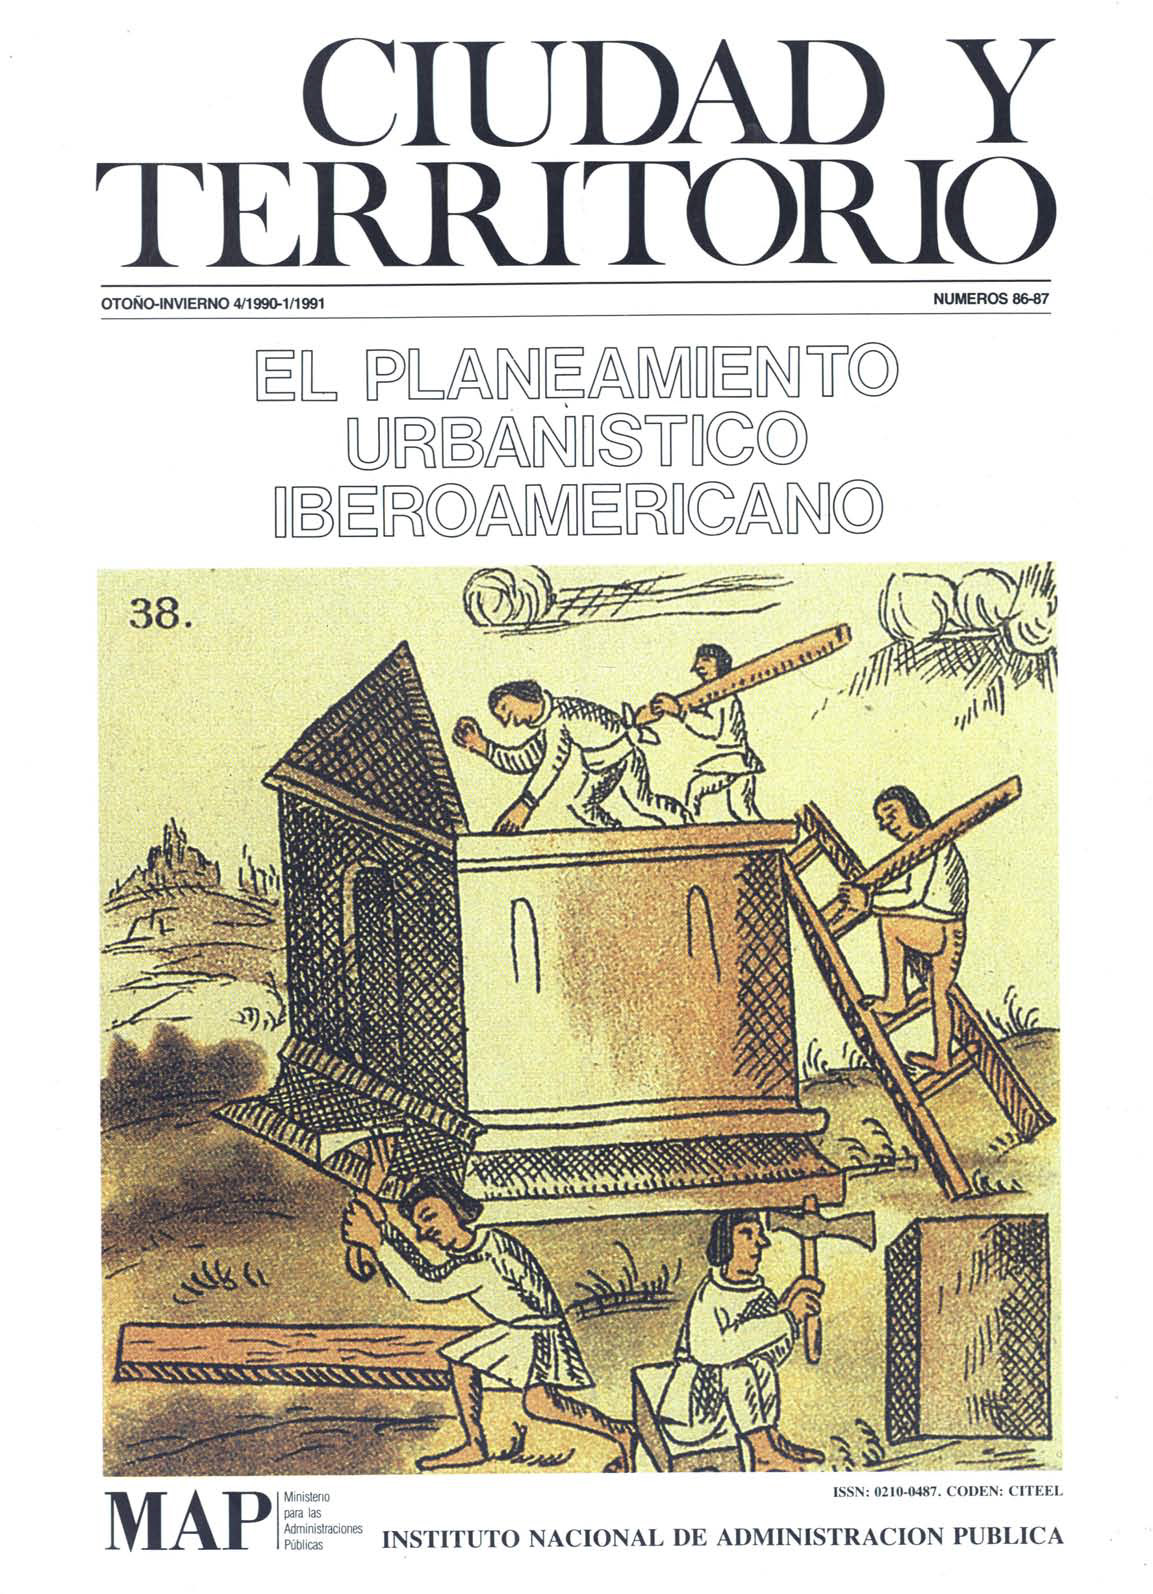 					Ver Ciudad y Territorio. Ciencia Urbana. Núms. 86-87 (1991)
				